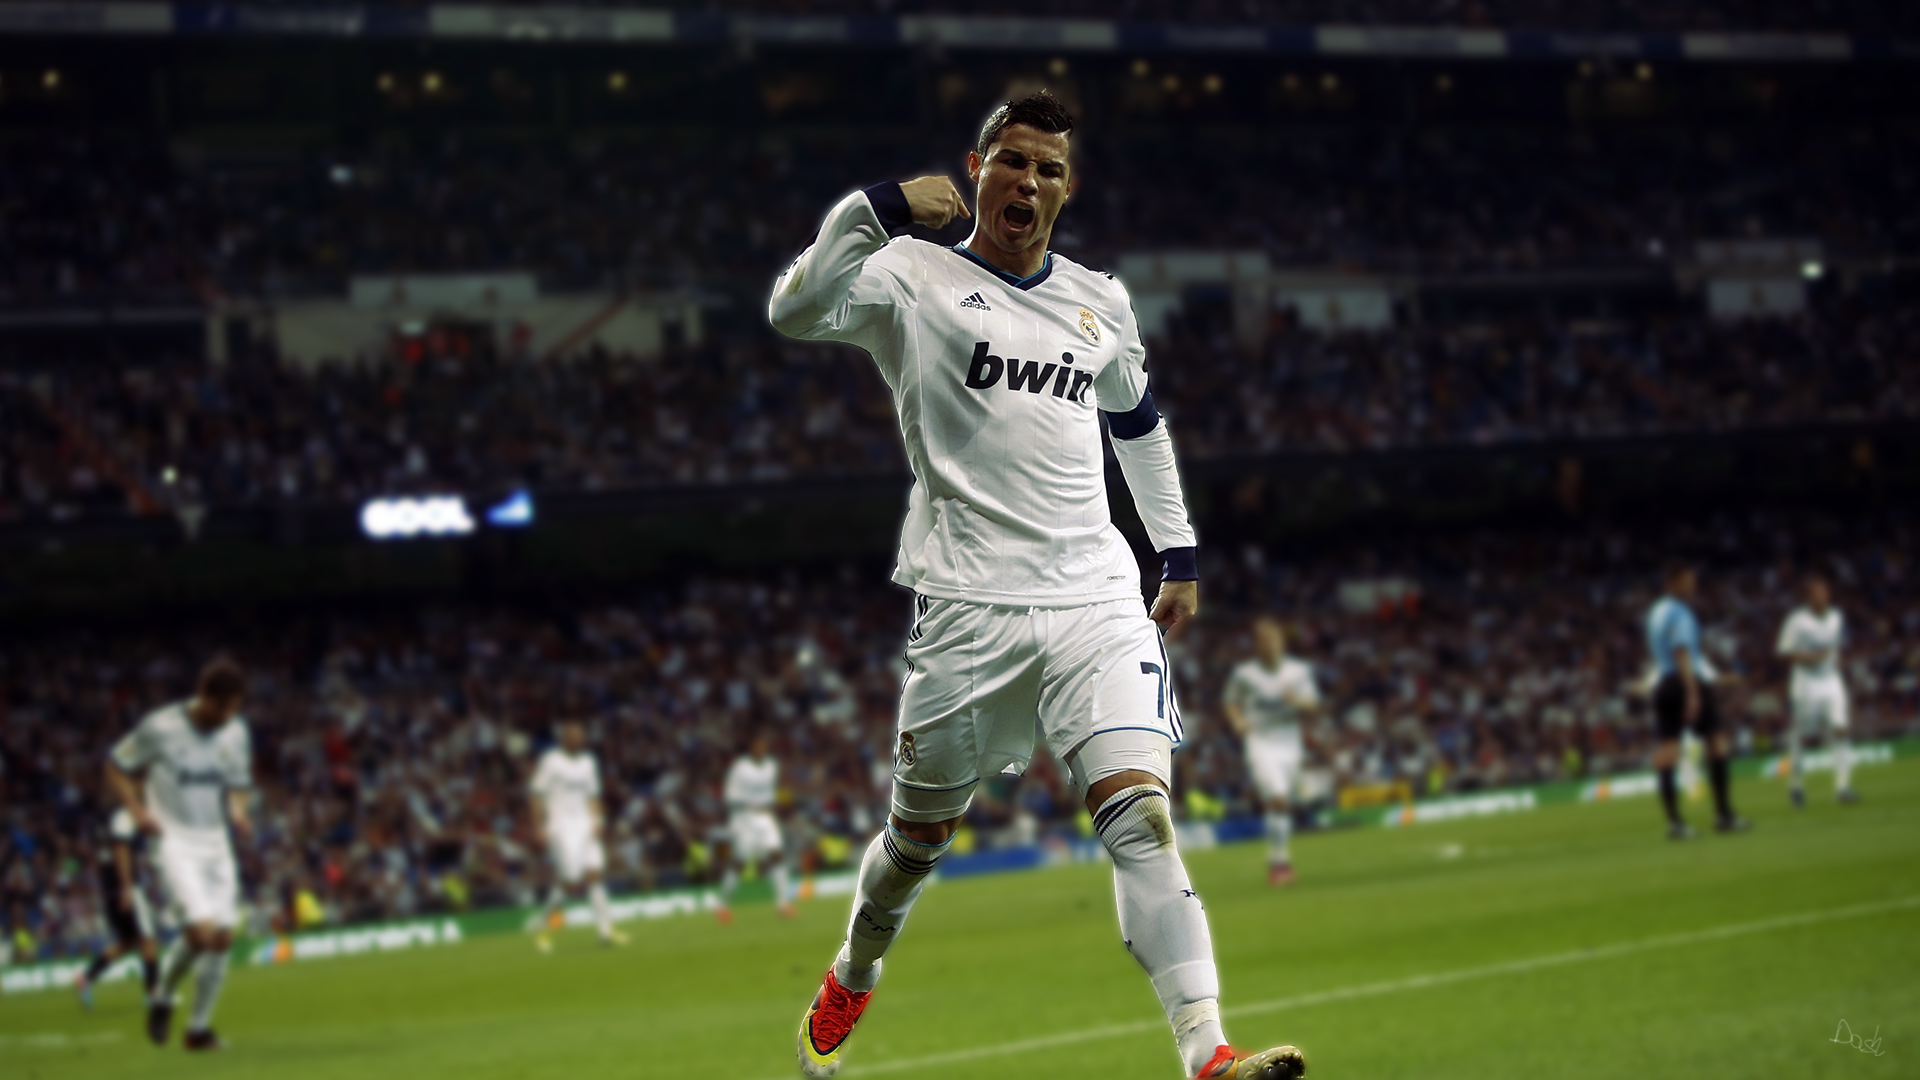 HD 1080p Wallpaper Of Cristiano Ronaldo